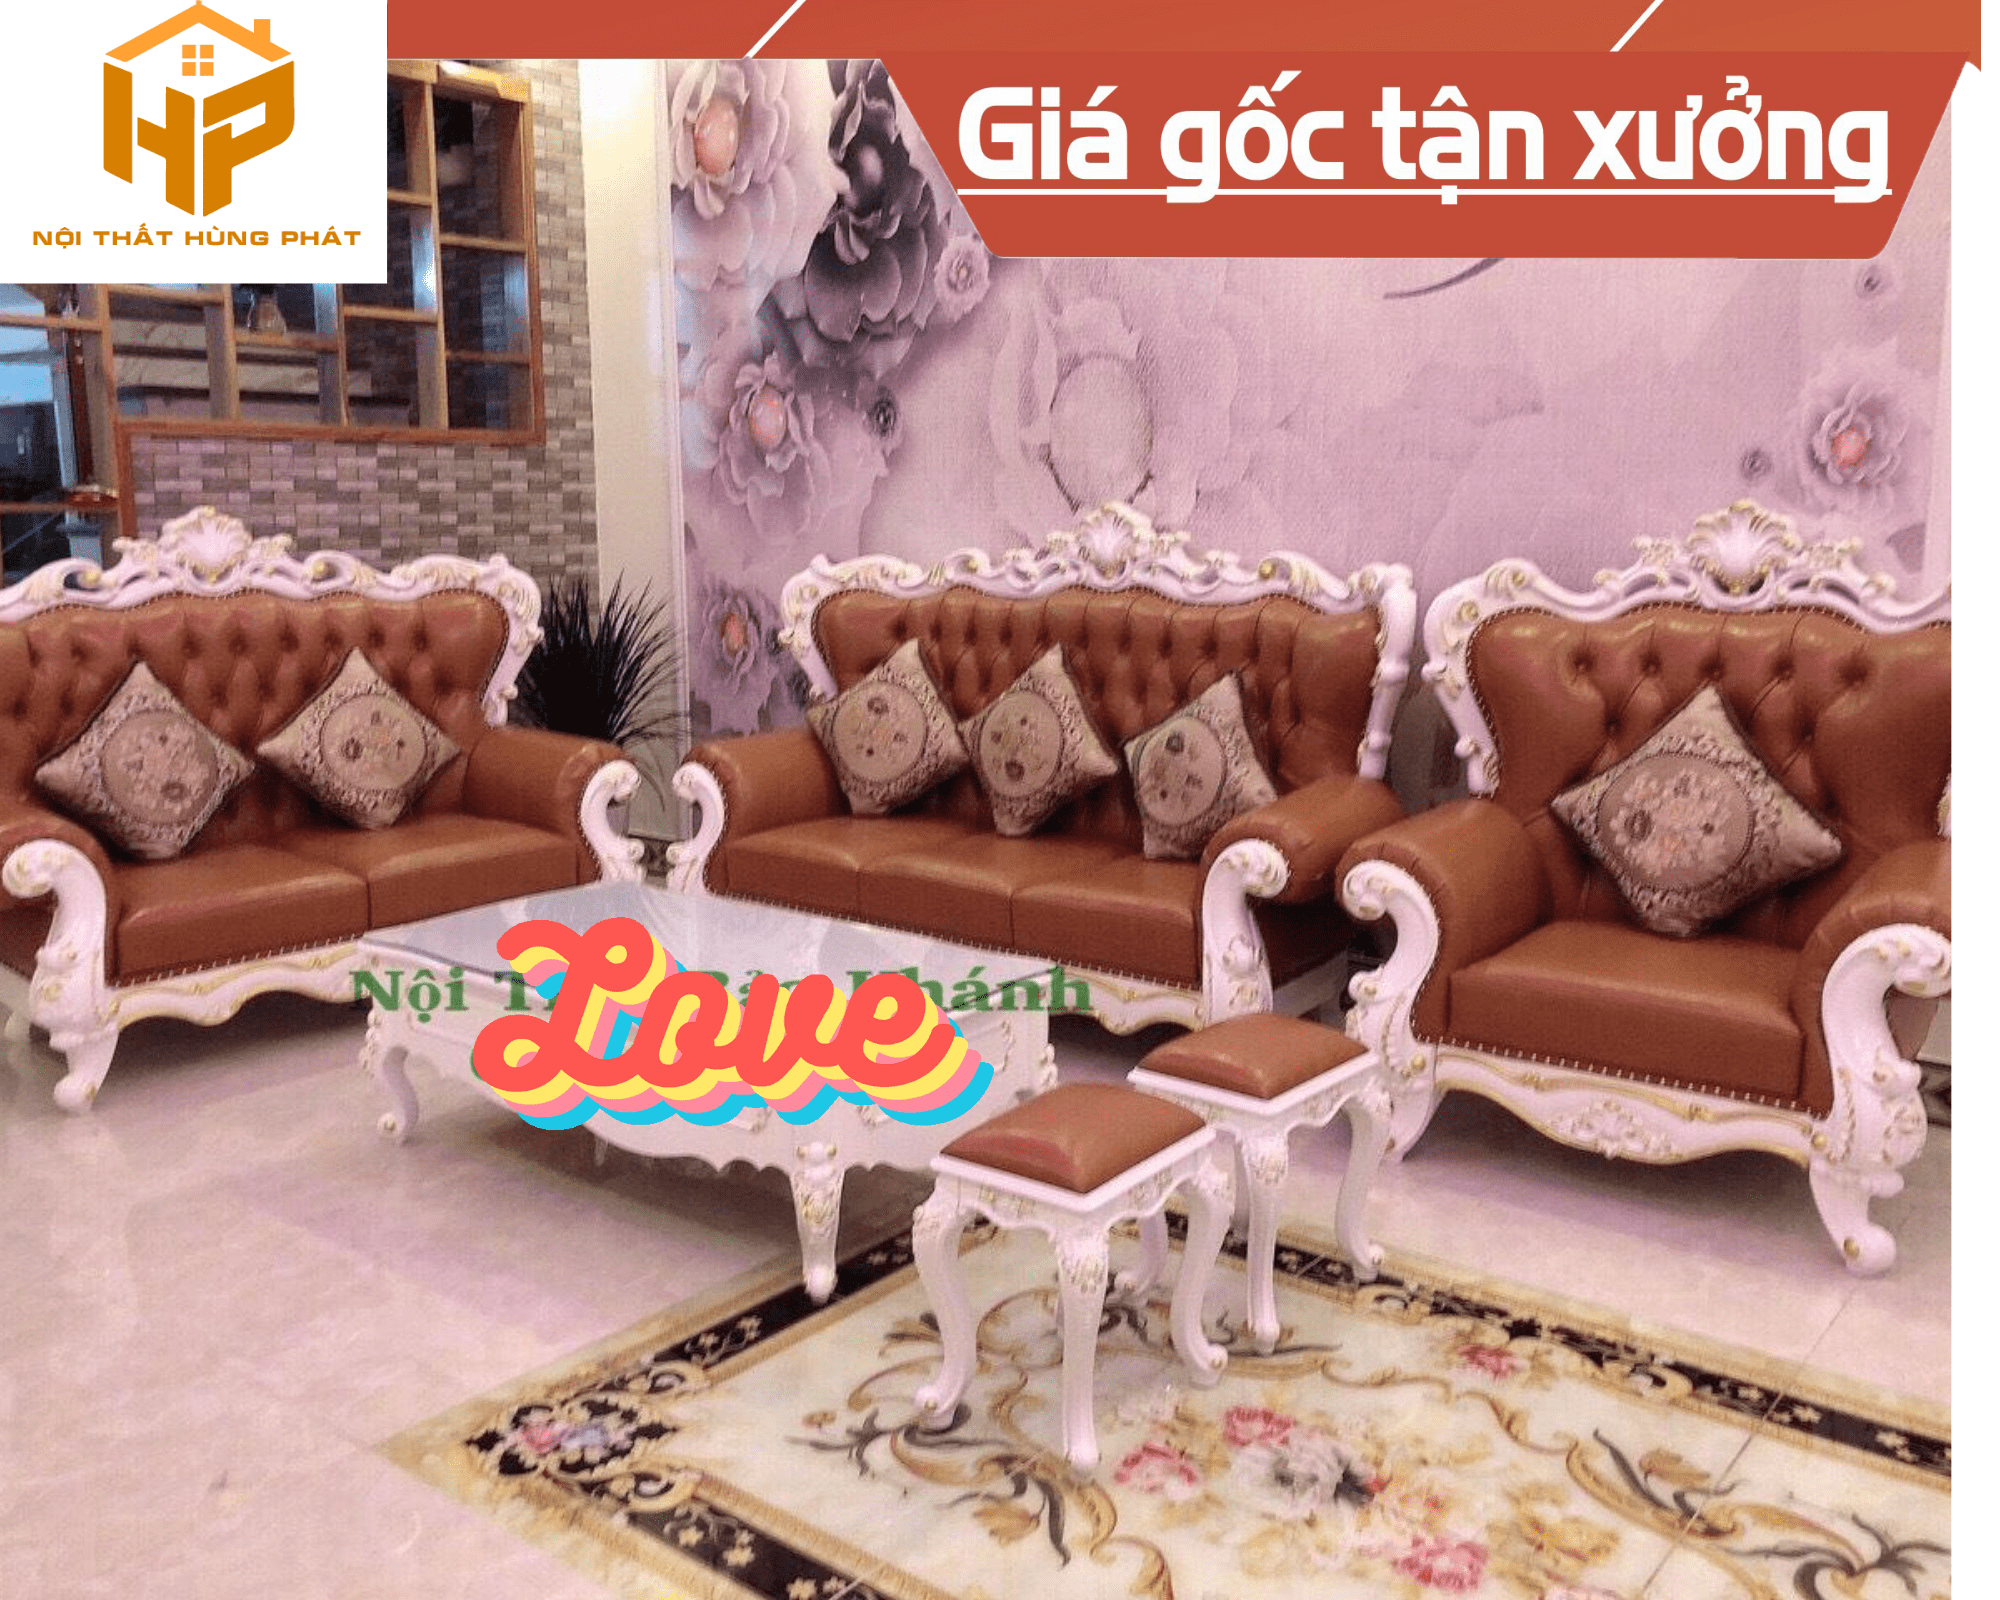 Bàn ghế Sofa Tân Cổ Điển là sự lựa chọn tuyệt vời để tạo nên không gian nội thất hoàn hảo. Sản phẩm được làm từ chất liệu cao cấp và thiết kế đẹp mắt, giúp mang đến cho bạn cảm giác thoải mái và thư giãn tuyệt đối.